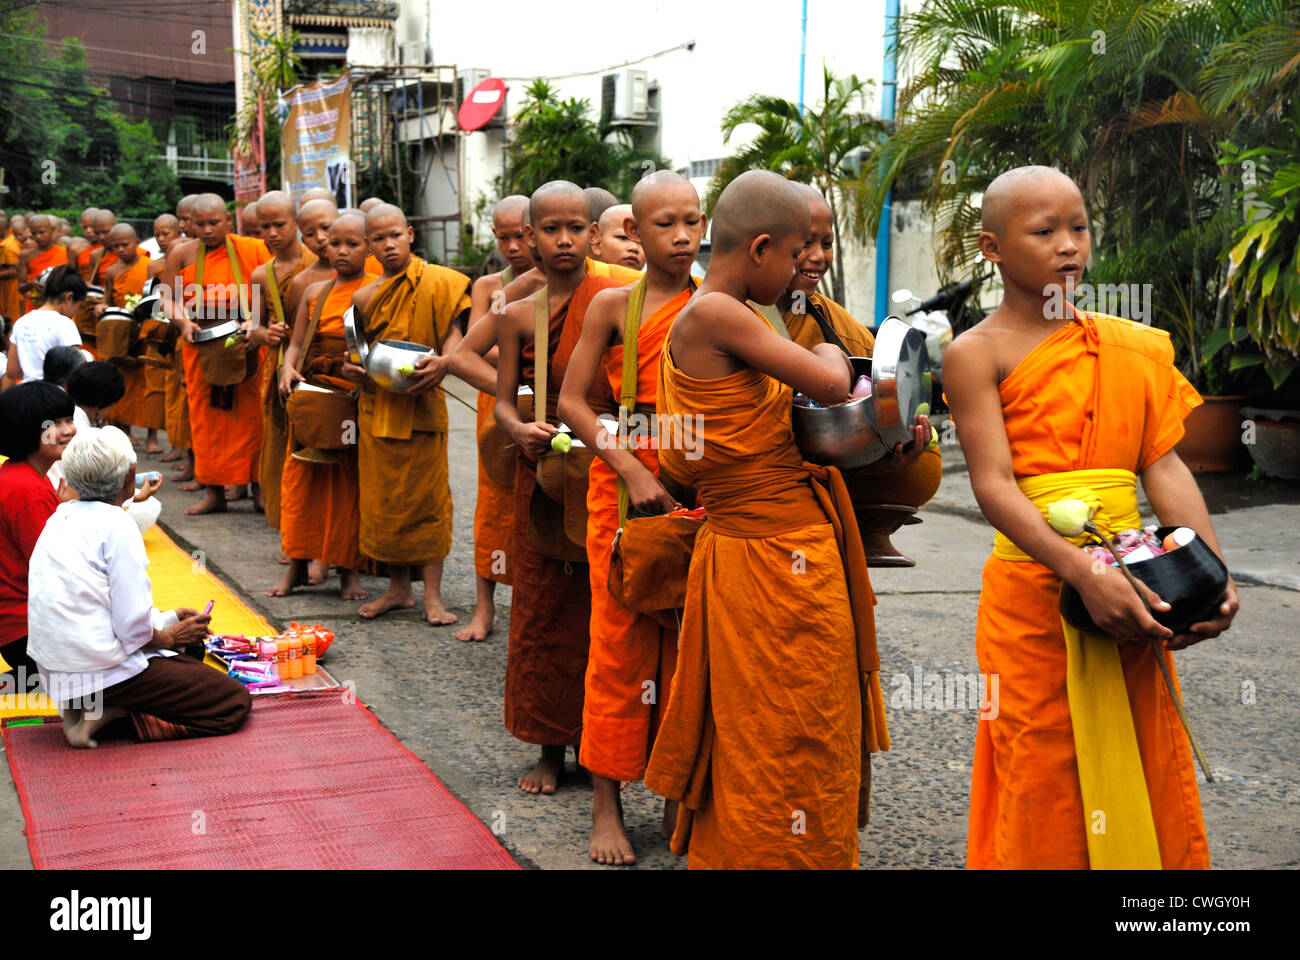 Moines recevant de la nourriture et de vos articles sur le carême bouddhiste Bouddha(jour) sur 12/08/2012 dans le nord-est de la Thaïlande Ubon Ratchathani Banque D'Images